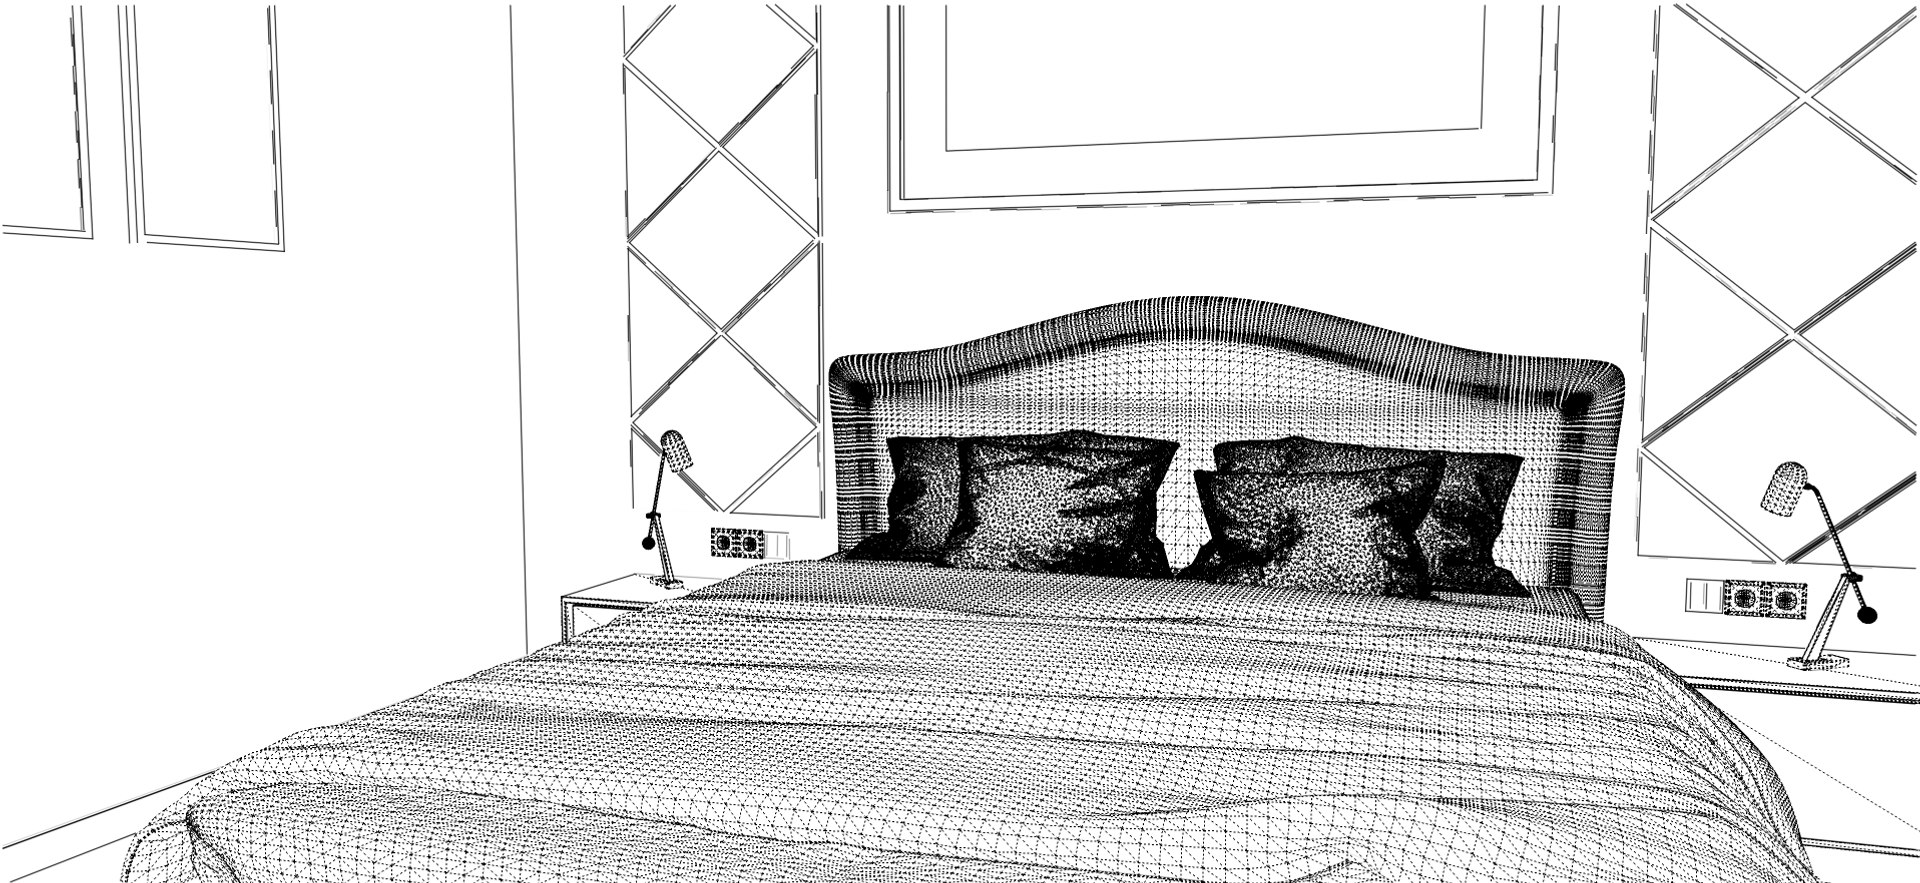 Bedroom Classic 3D Model - TurboSquid 1413203